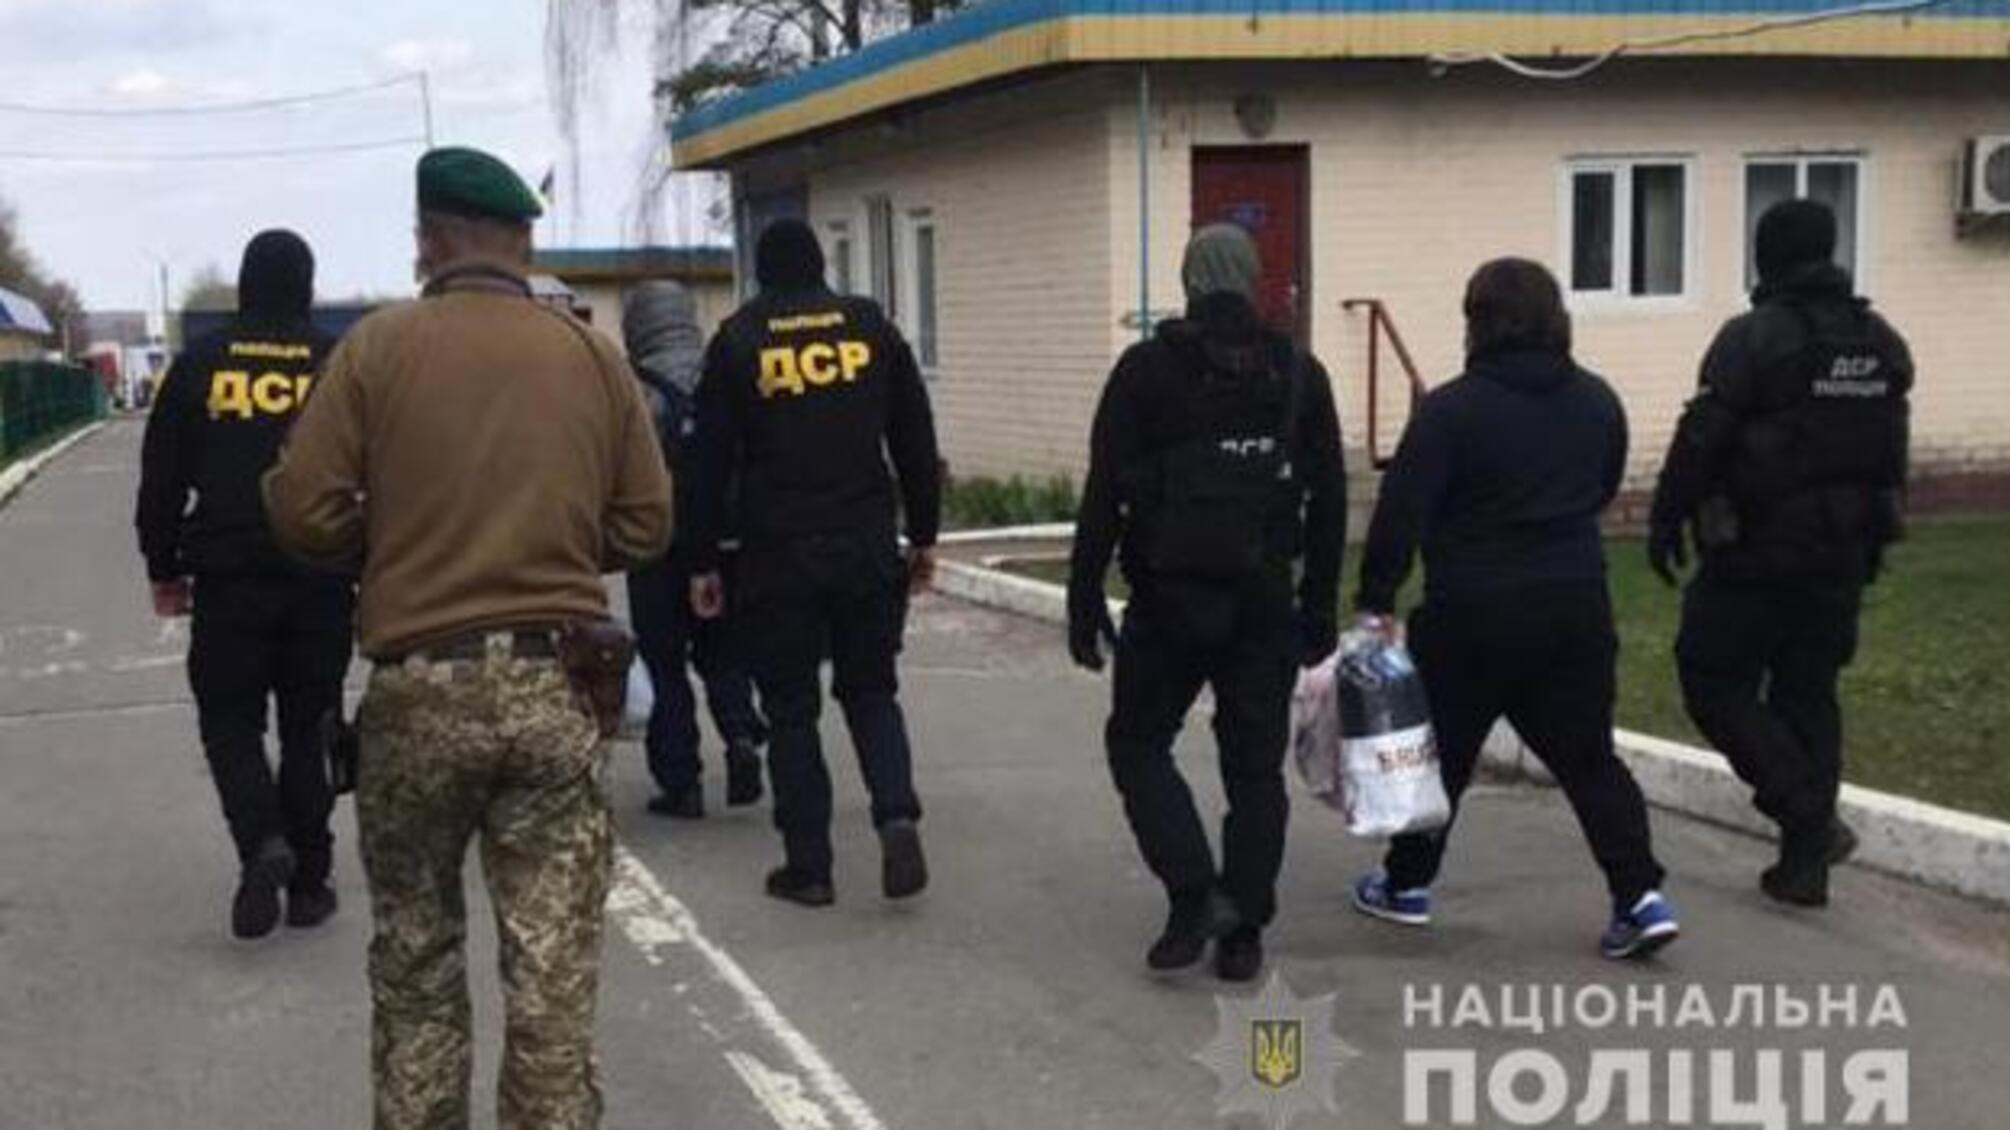 Примусове «відрядження»: «вора в законі» «Міндію Гальського» і «кримінального авторитета» видворили за межі України